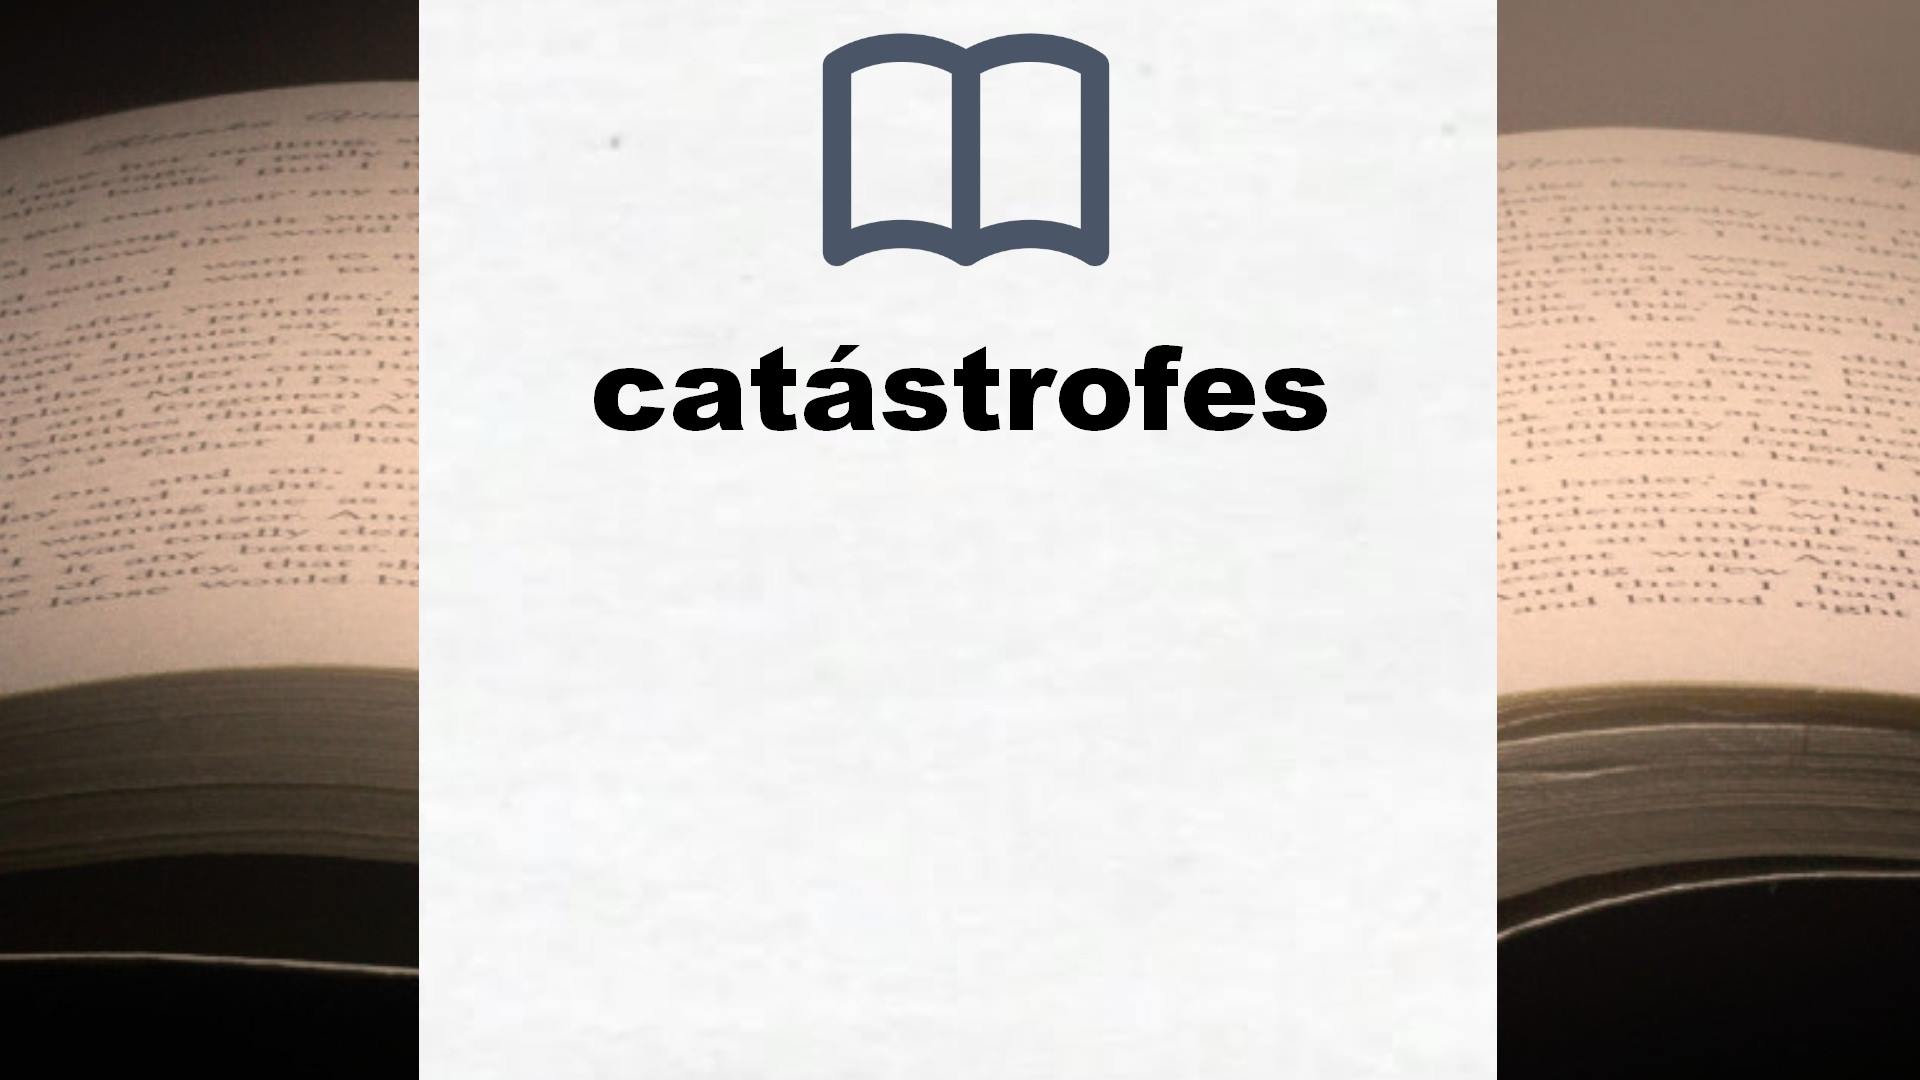 Libros sobre catástrofes